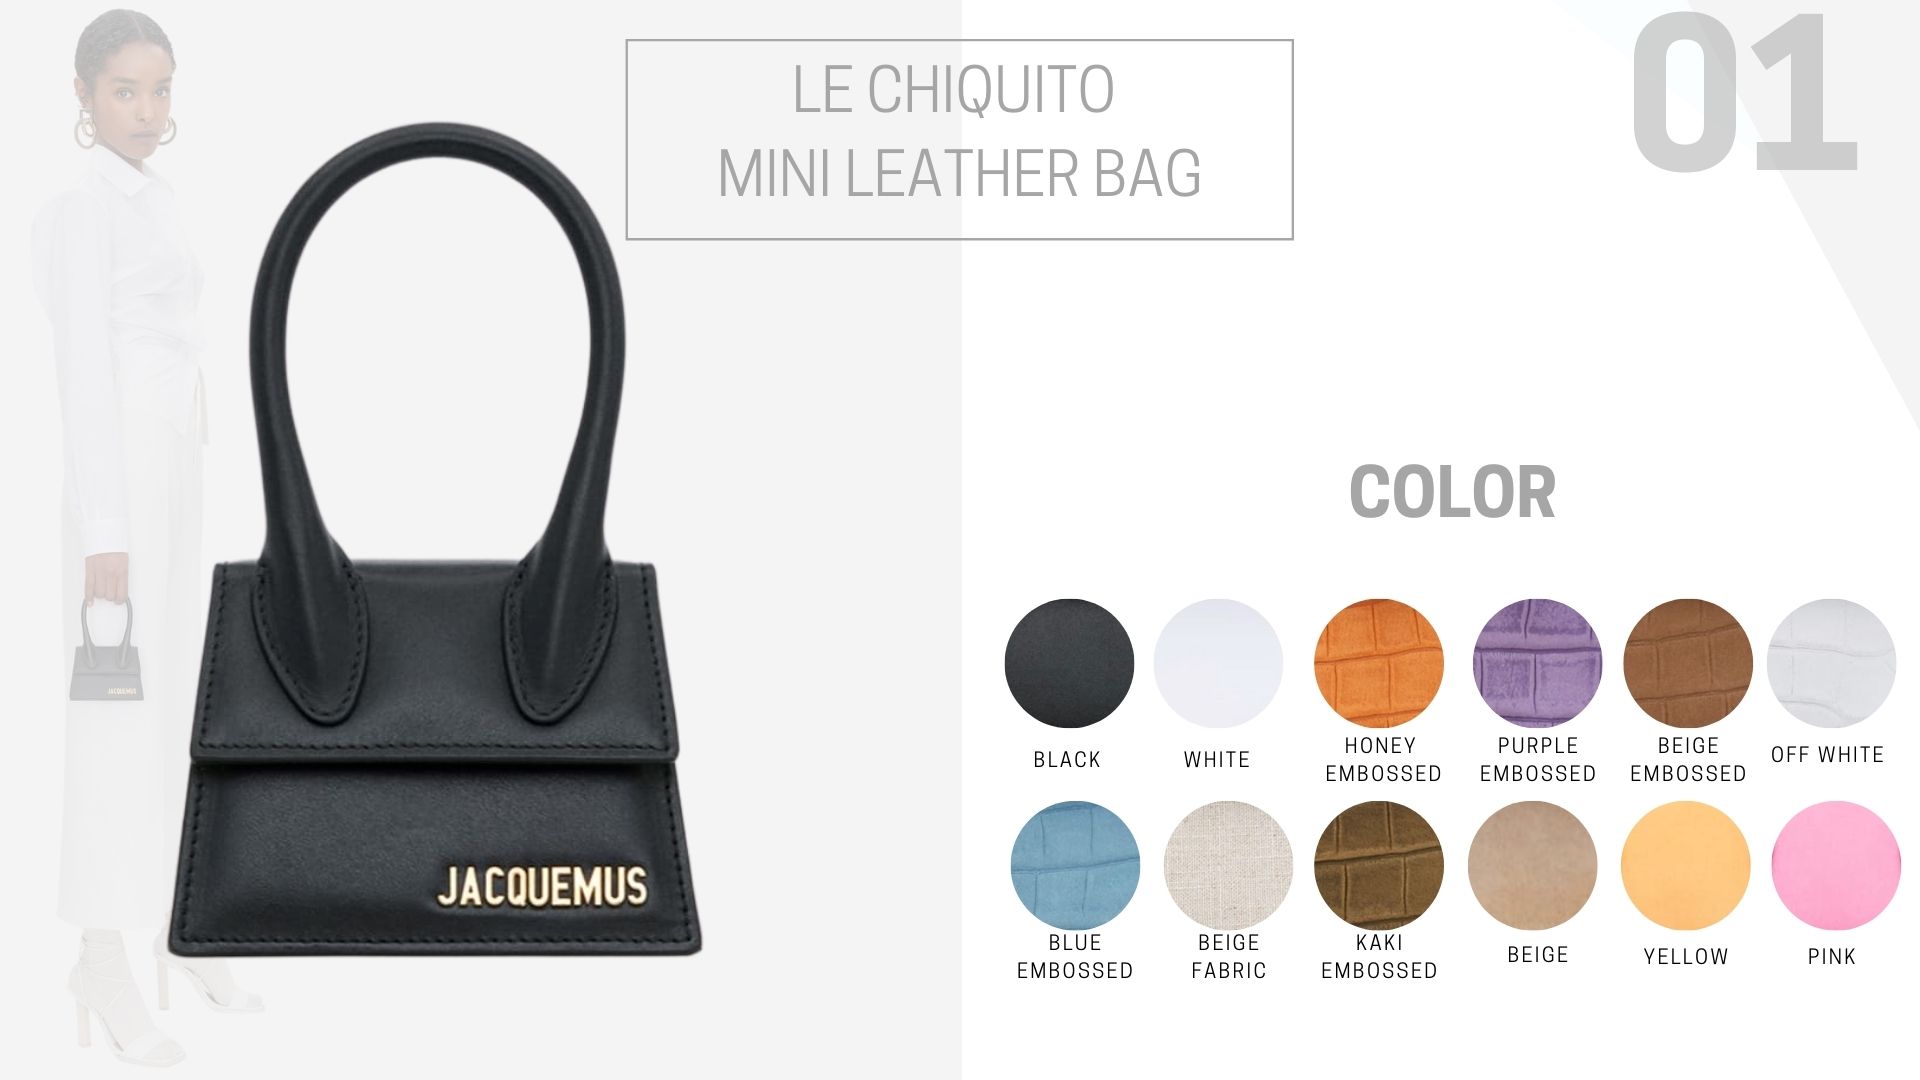 Le Chiquito Mini leather bag